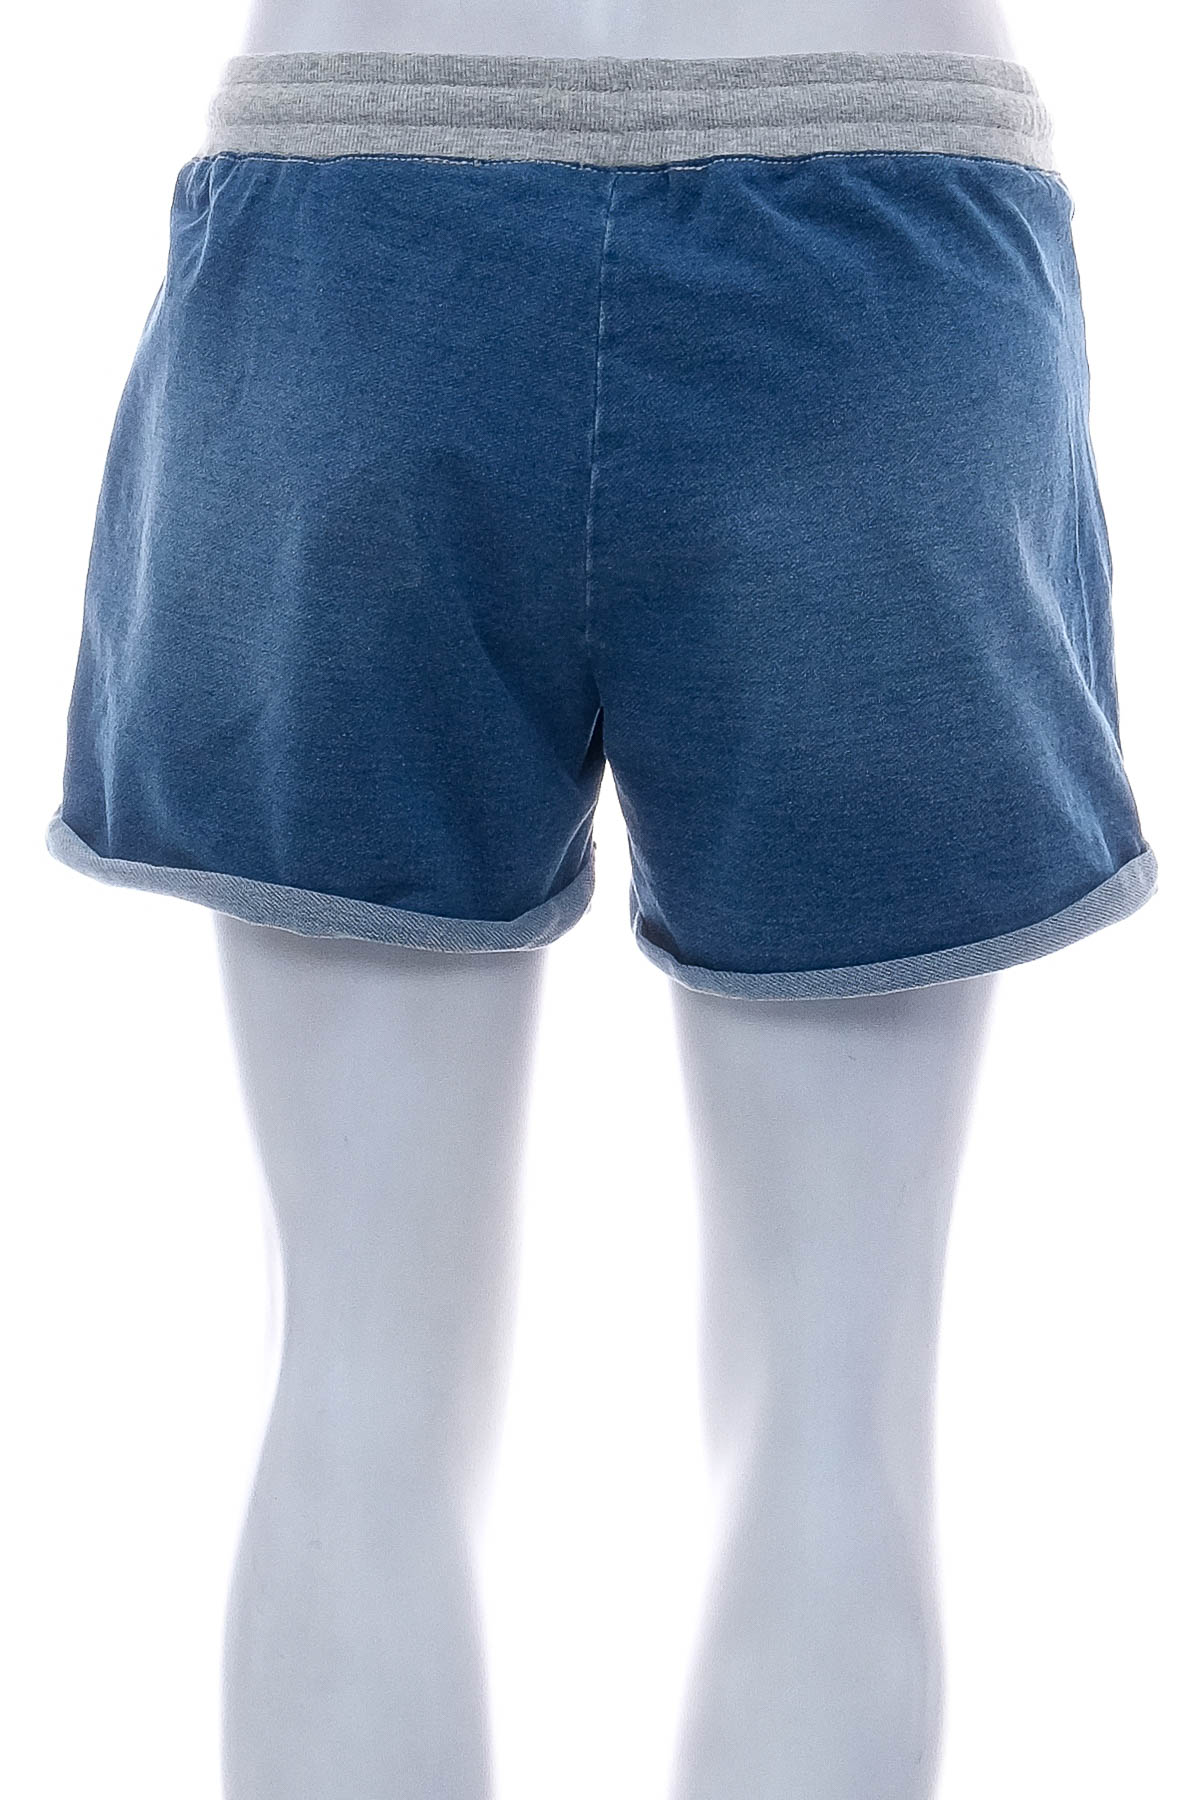 Female shorts - Blue Motion - 1